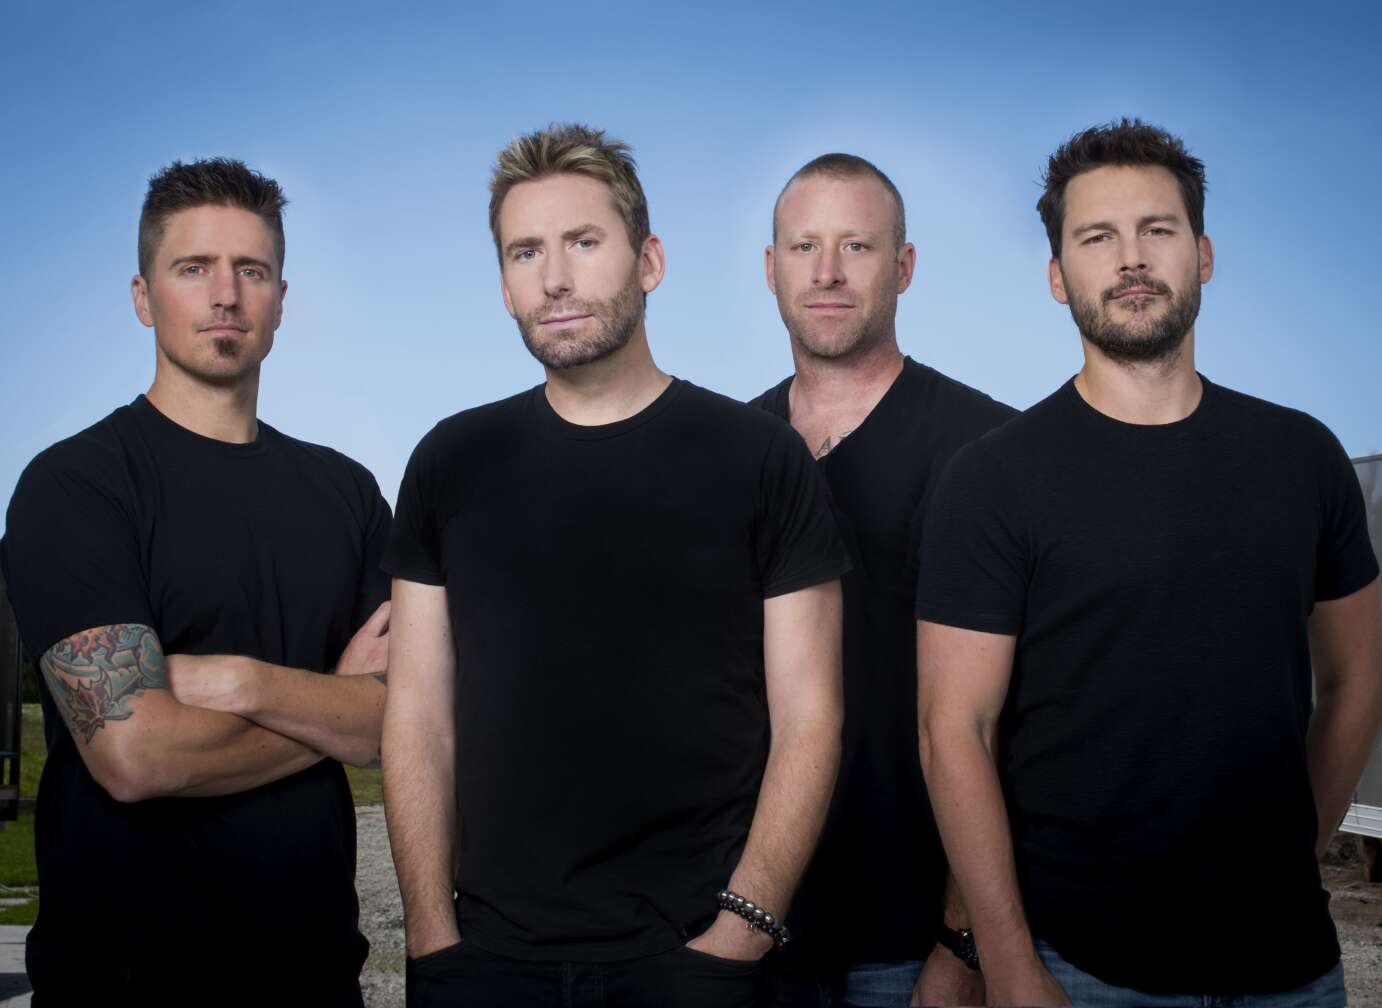 Gruppenfoto der Band Nickelback